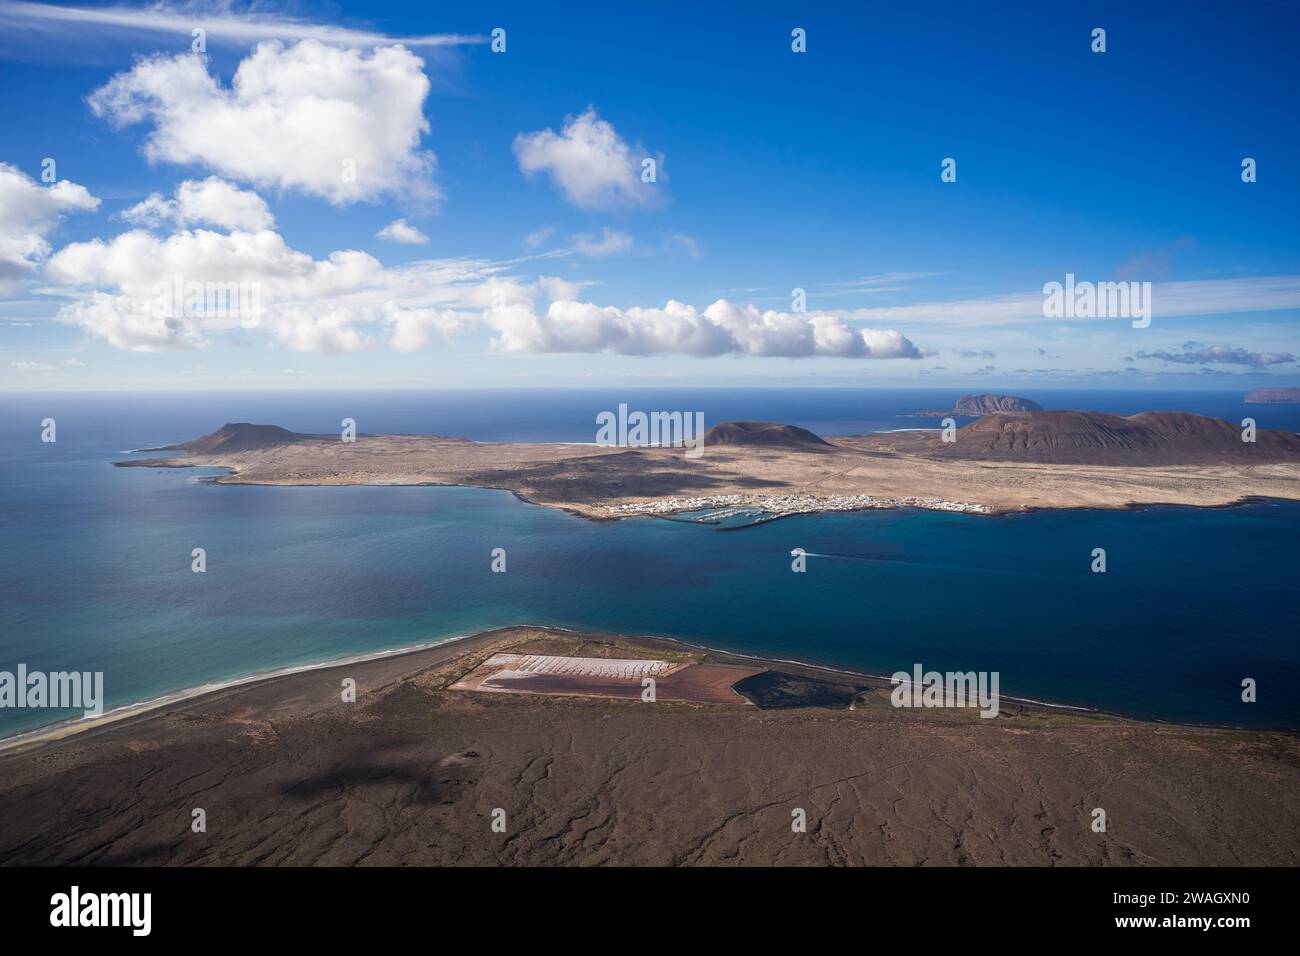 Blick auf die Insel La Graciosa vom Mirador Del Rio (Aussichtspunkt). Lanzarote. Kanarische Inseln. Spanien. Stockfoto